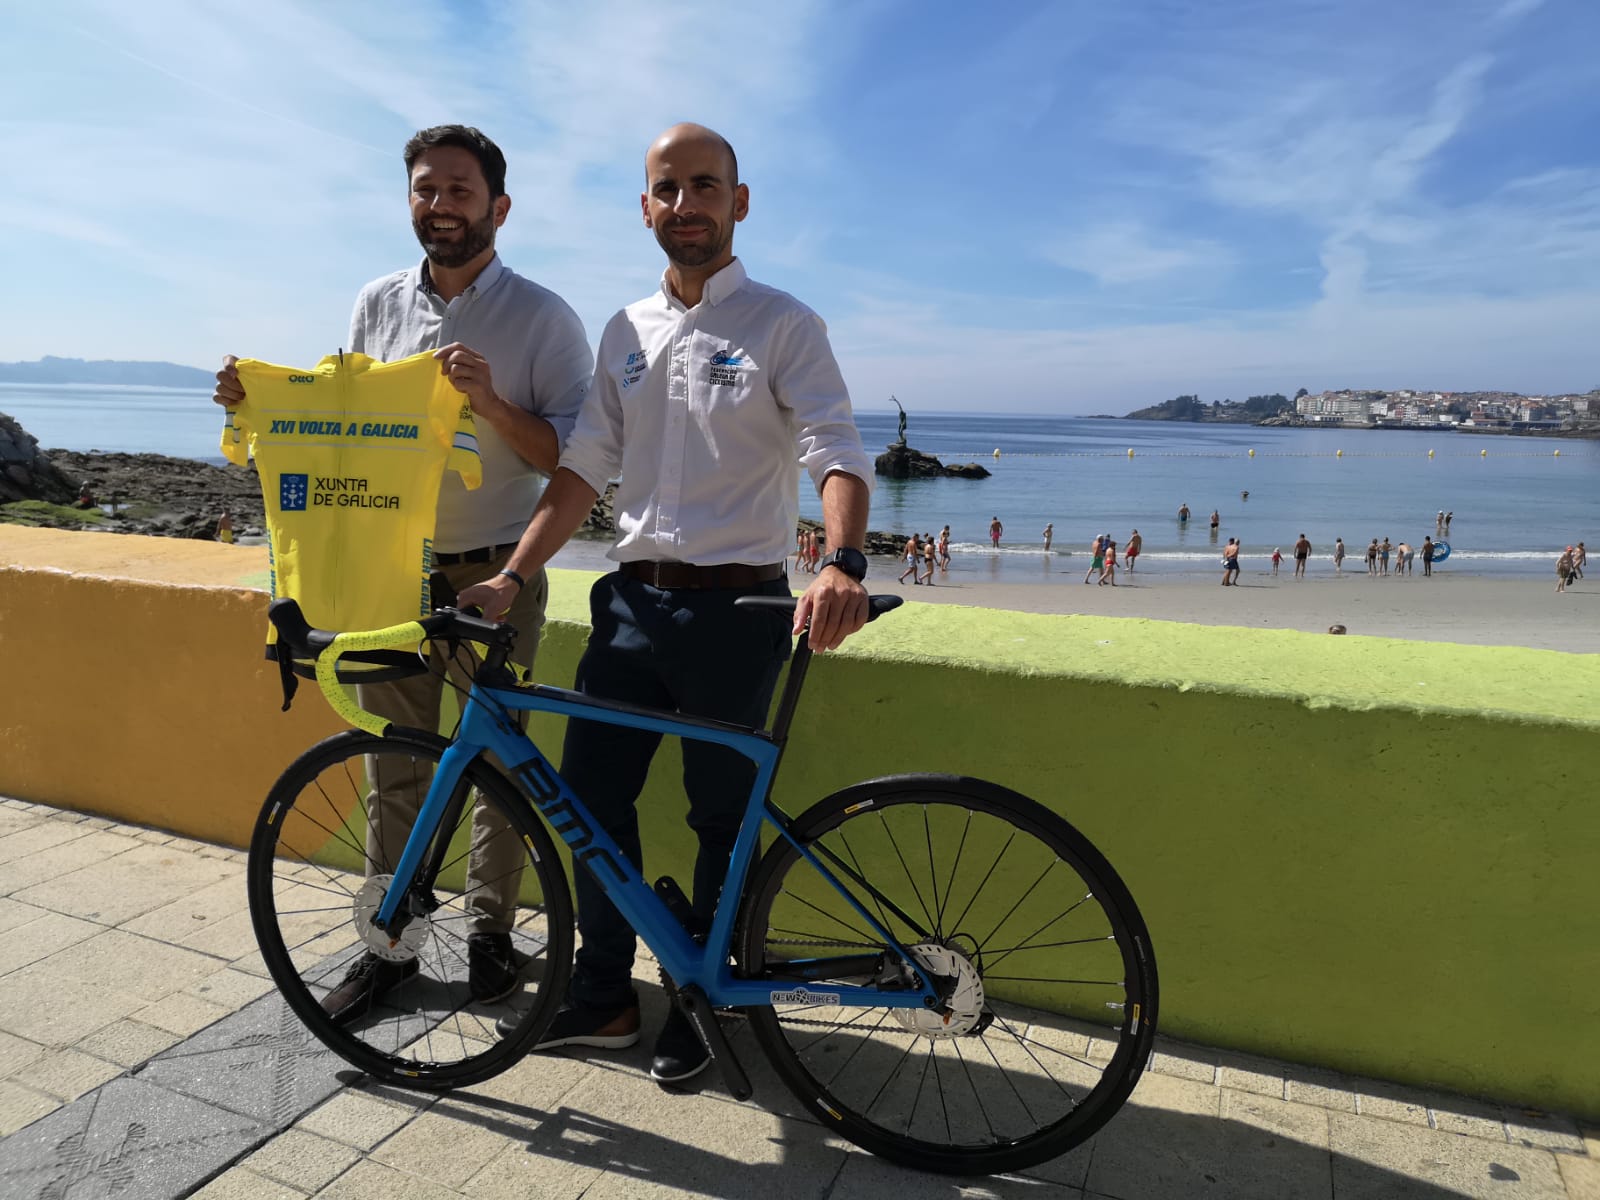 Restricciones al tráfico rodado con motivo de la vuelta ciclista a Galicia